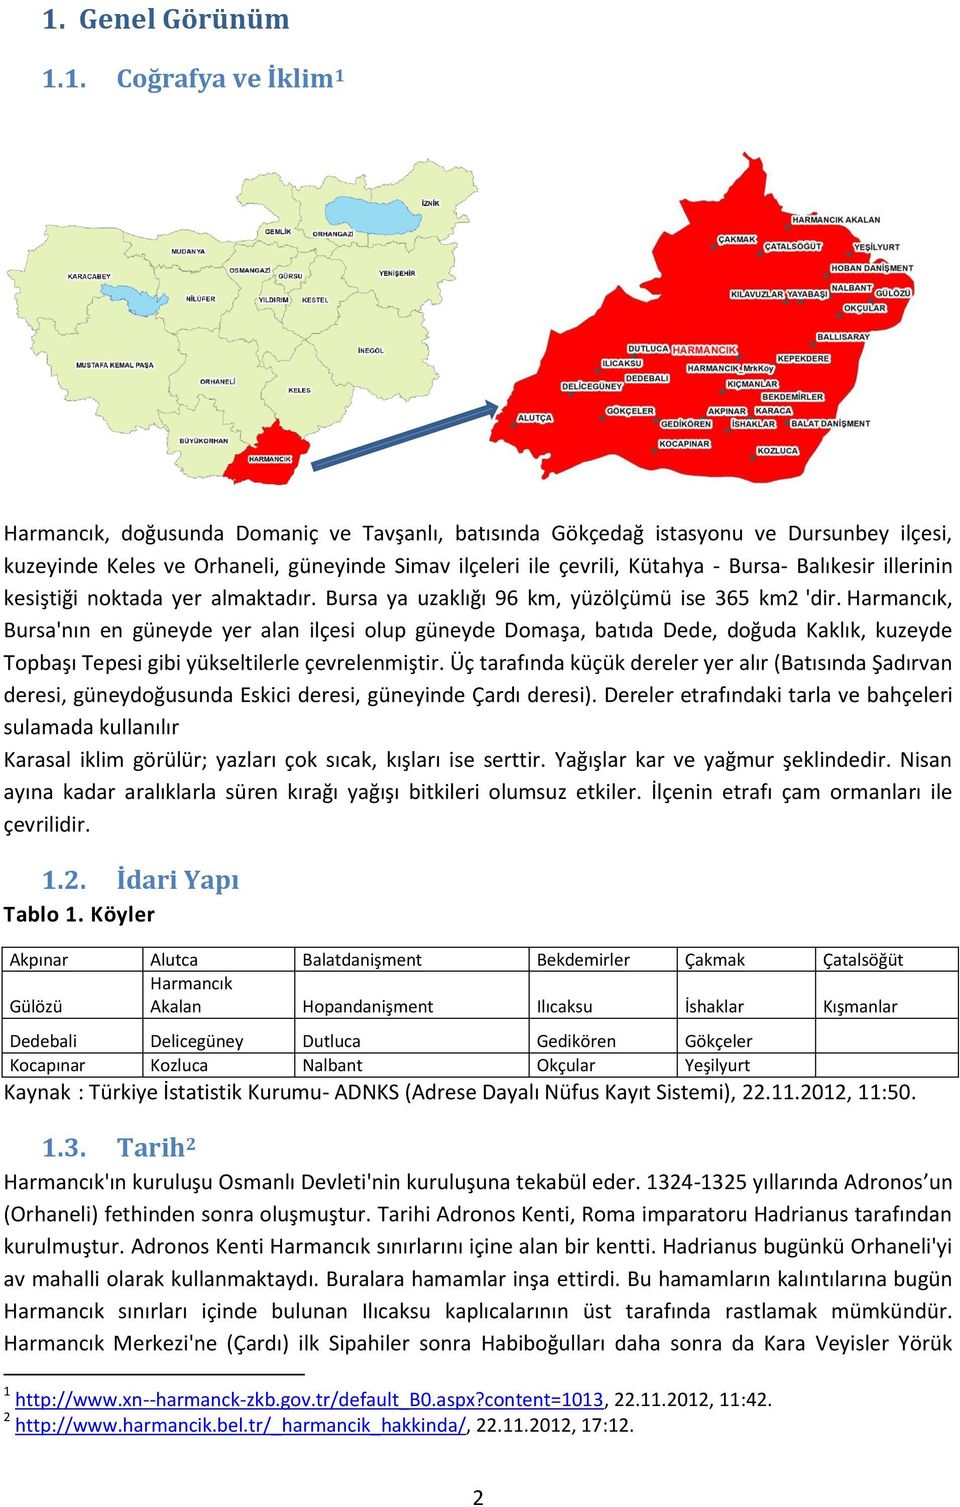 Harmancık, Bursa'nın en güneyde yer alan ilçesi olup güneyde Domaşa, batıda Dede, doğuda Kaklık, kuzeyde Topbaşı Tepesi gibi yükseltilerle çevrelenmiştir.